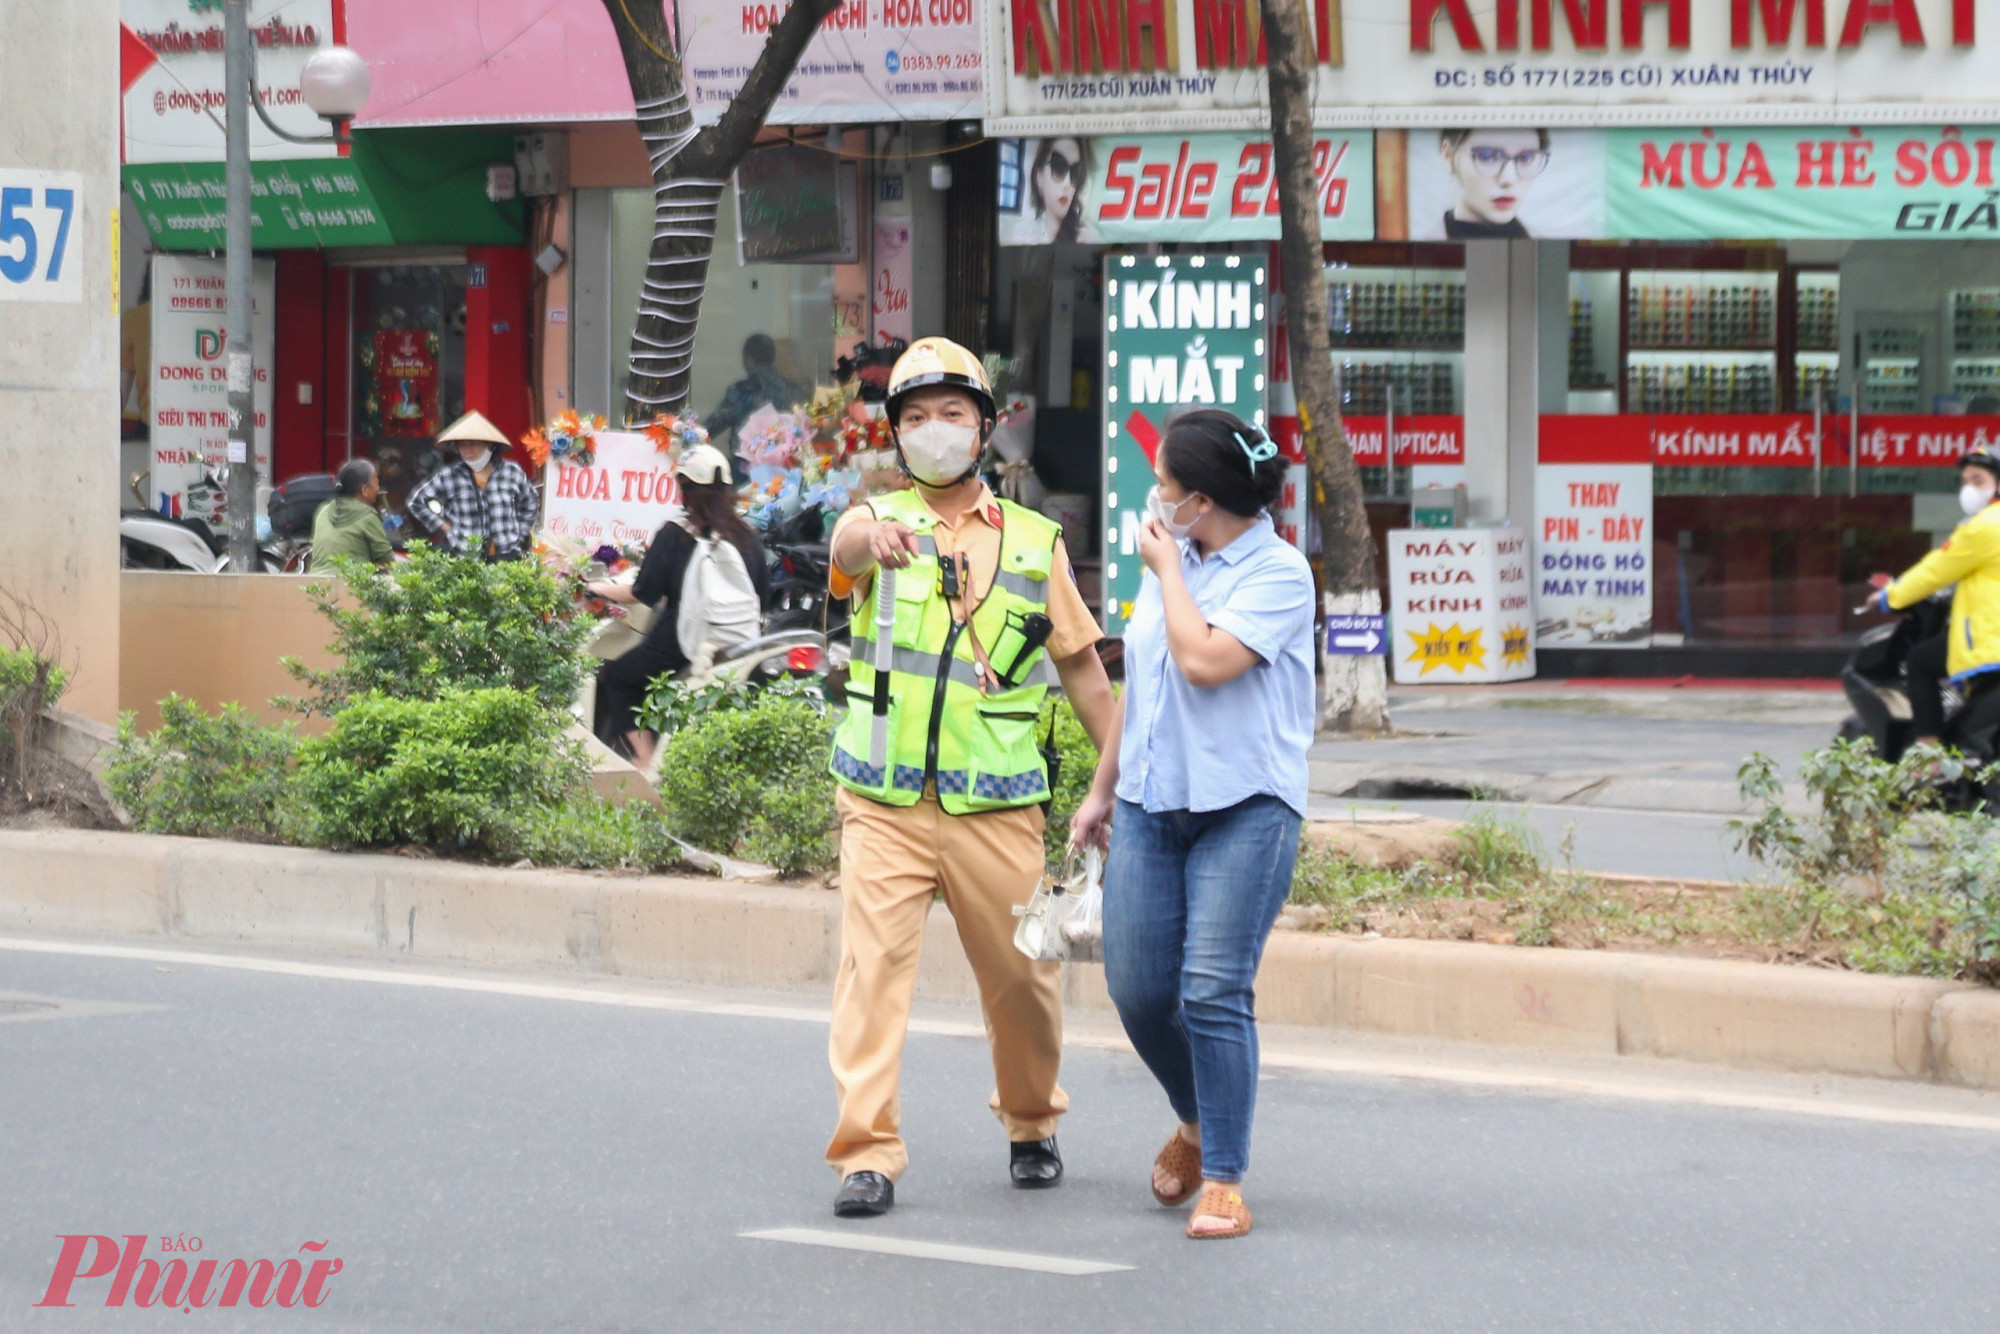 Tổ Công tác Đội CSGT số 6 kiểm tra, xử lý người đi bộ vi phạm tại tuyến đường Cầu Giấy (Hà Nội). Nhiều người tỏ ra bất ngờ khi bị xử phạt.